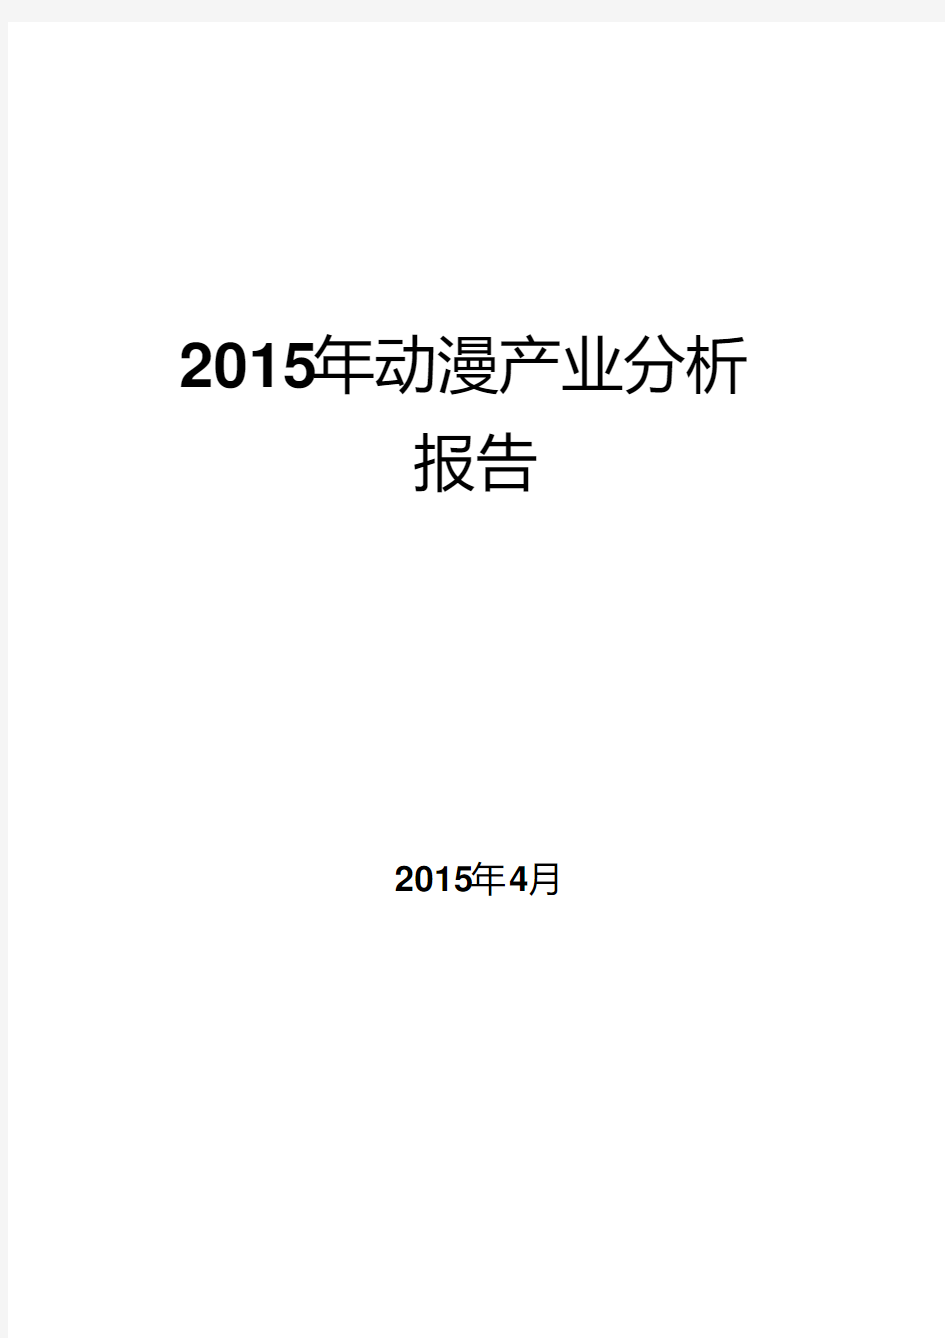 2015年动漫产业分析报告